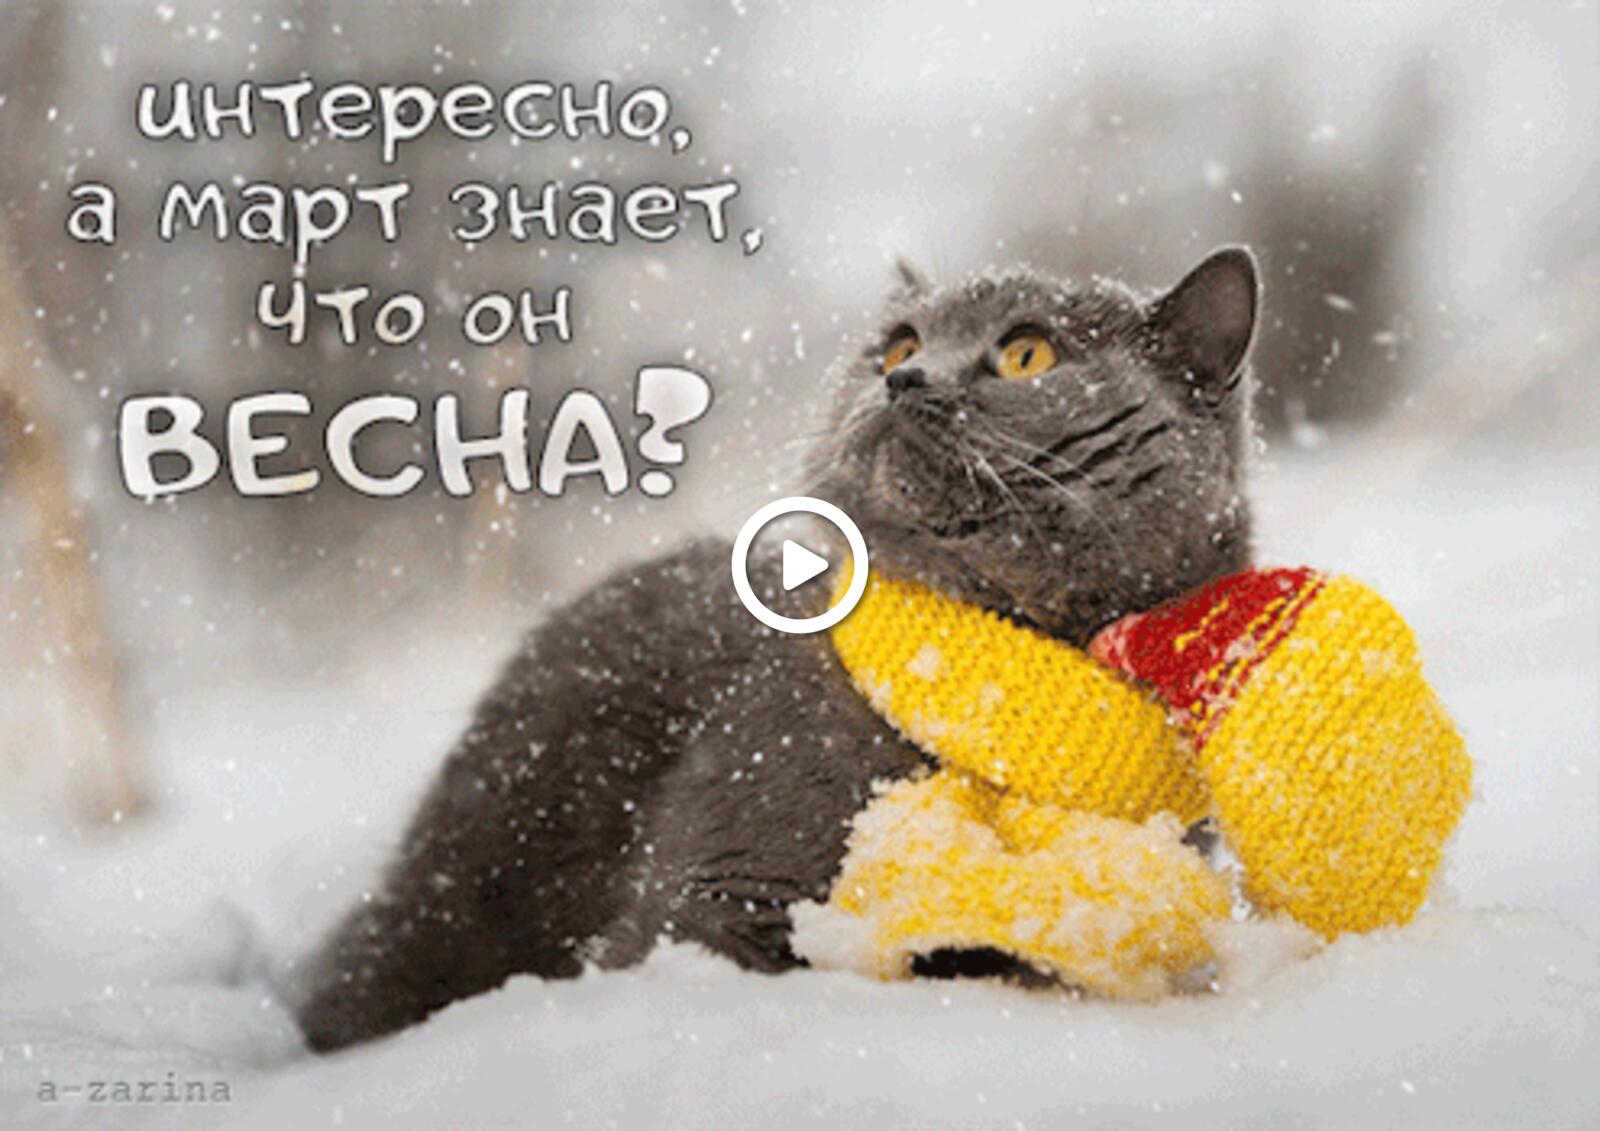 一张以春季 猫 雪为主题的明信片